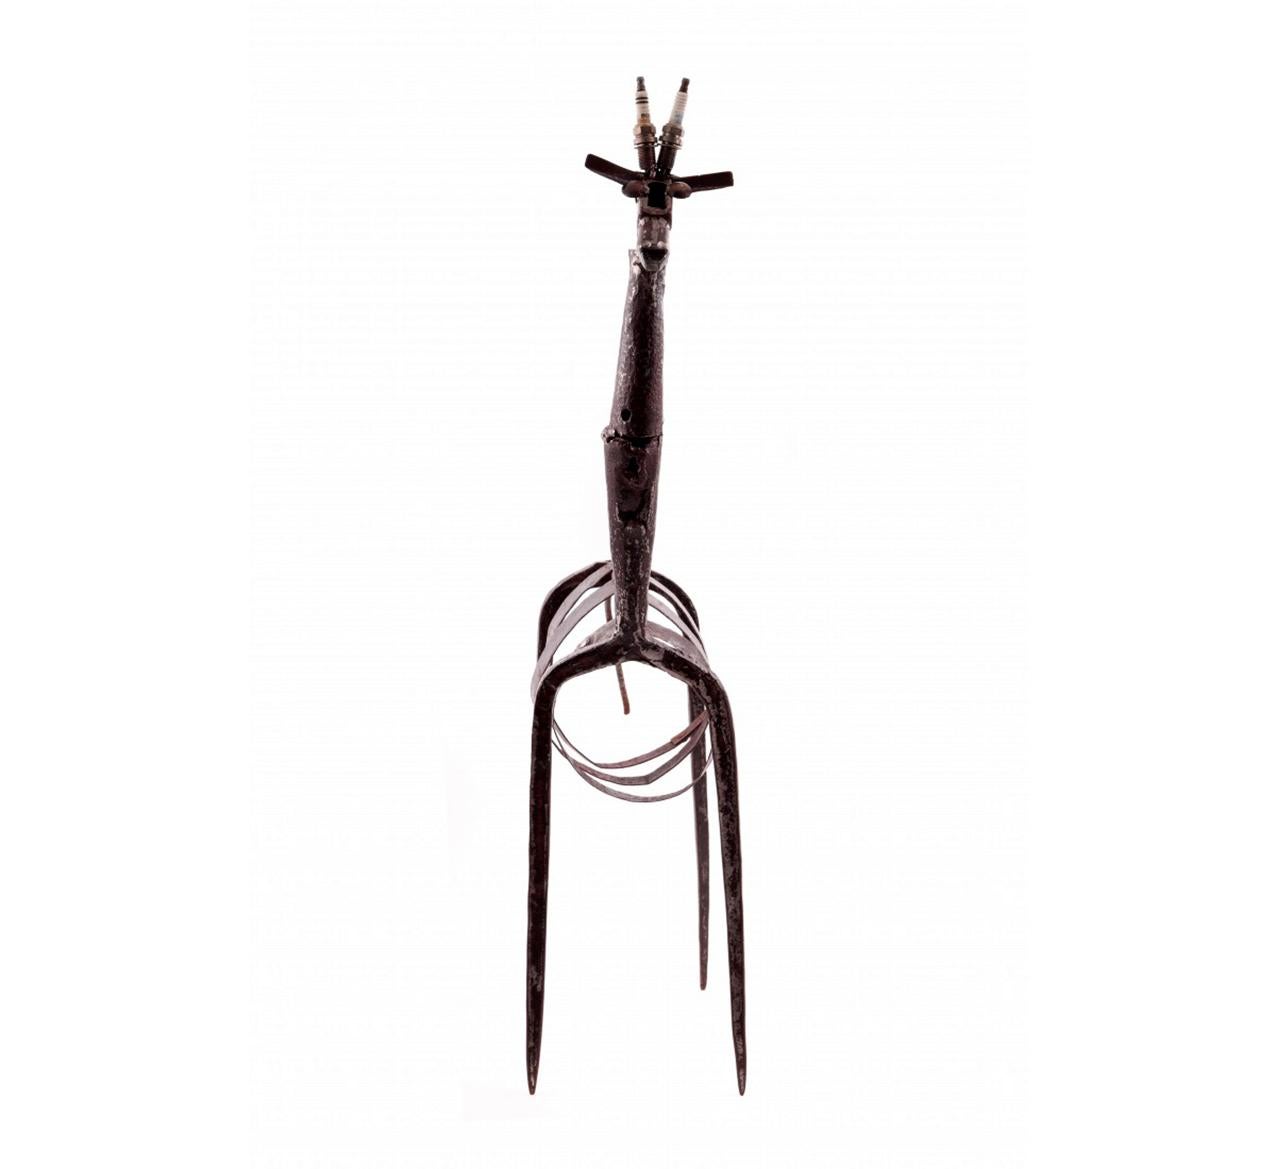 Girafe de José Jerónimo, oeuvre d'art unique
Sculpture en fer avec utilisation d'outils et d'autres objets
Signé

Mesures : 81 x 41 x 15 cm.
Collection privée.